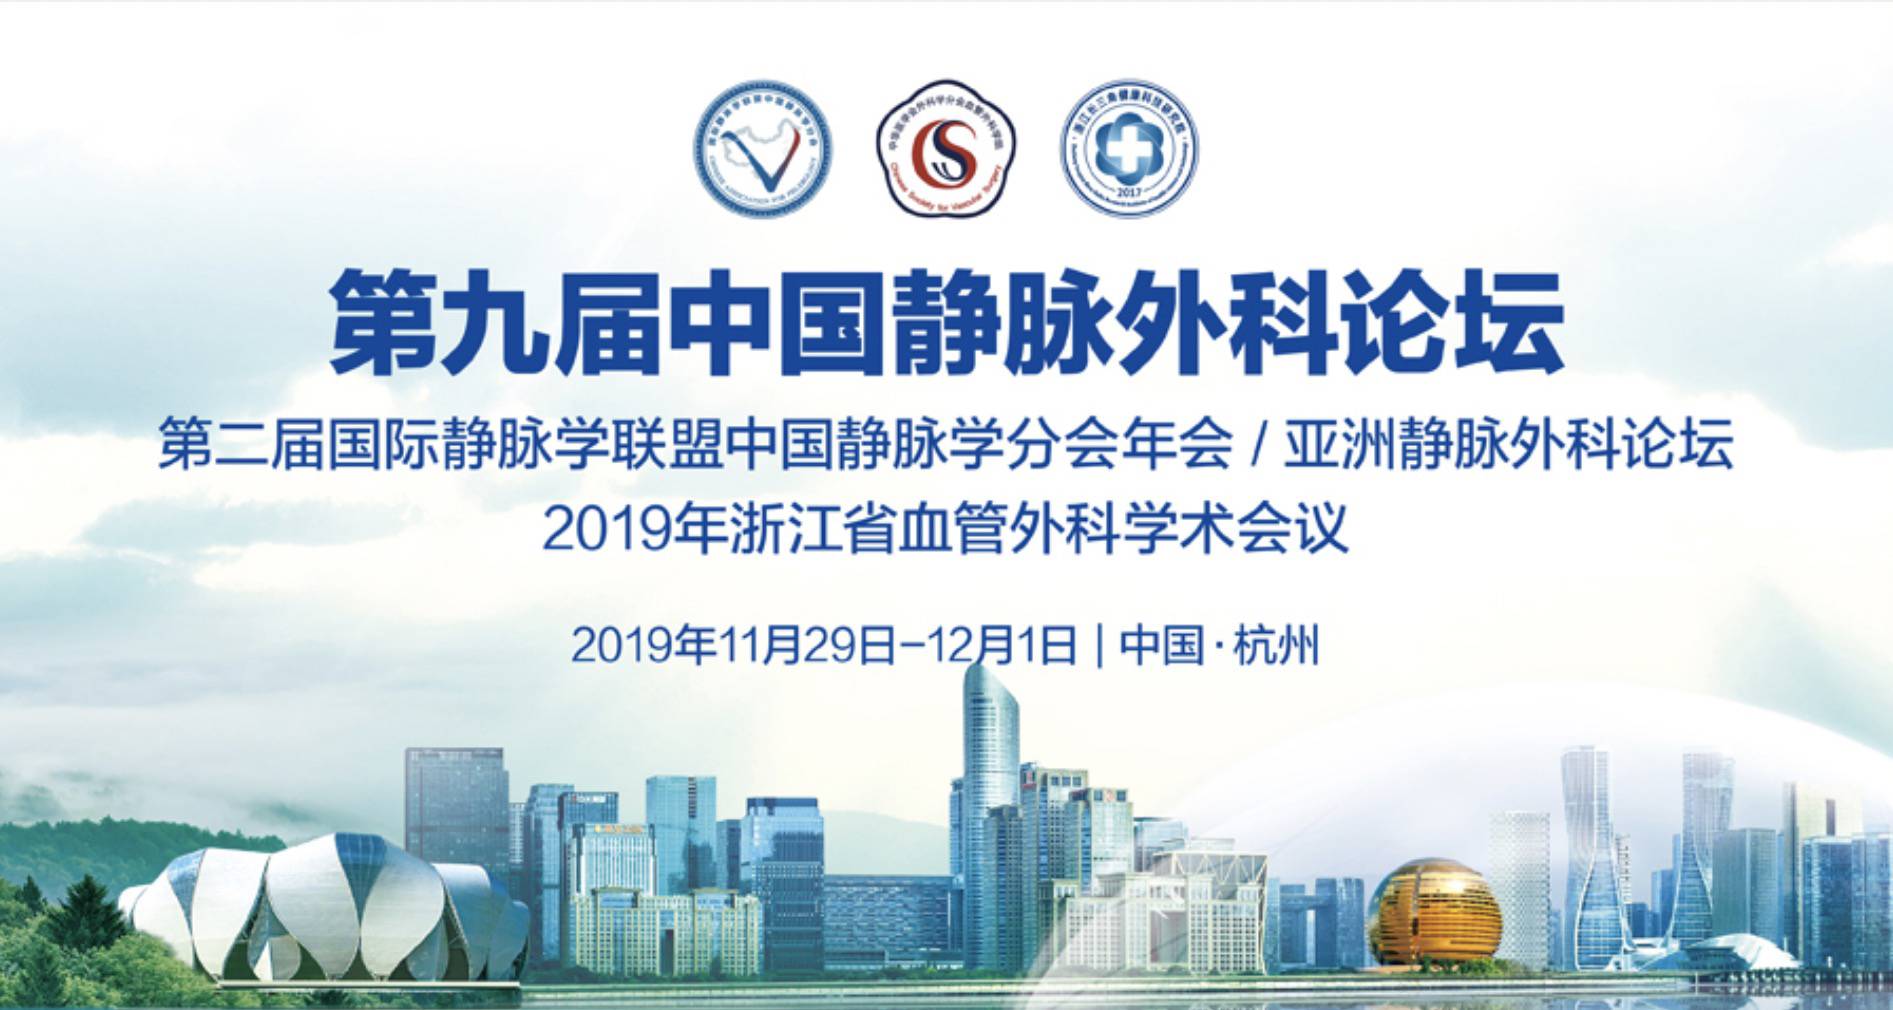 2019第九届中国静脉外科论坛壁报比赛开始啦！